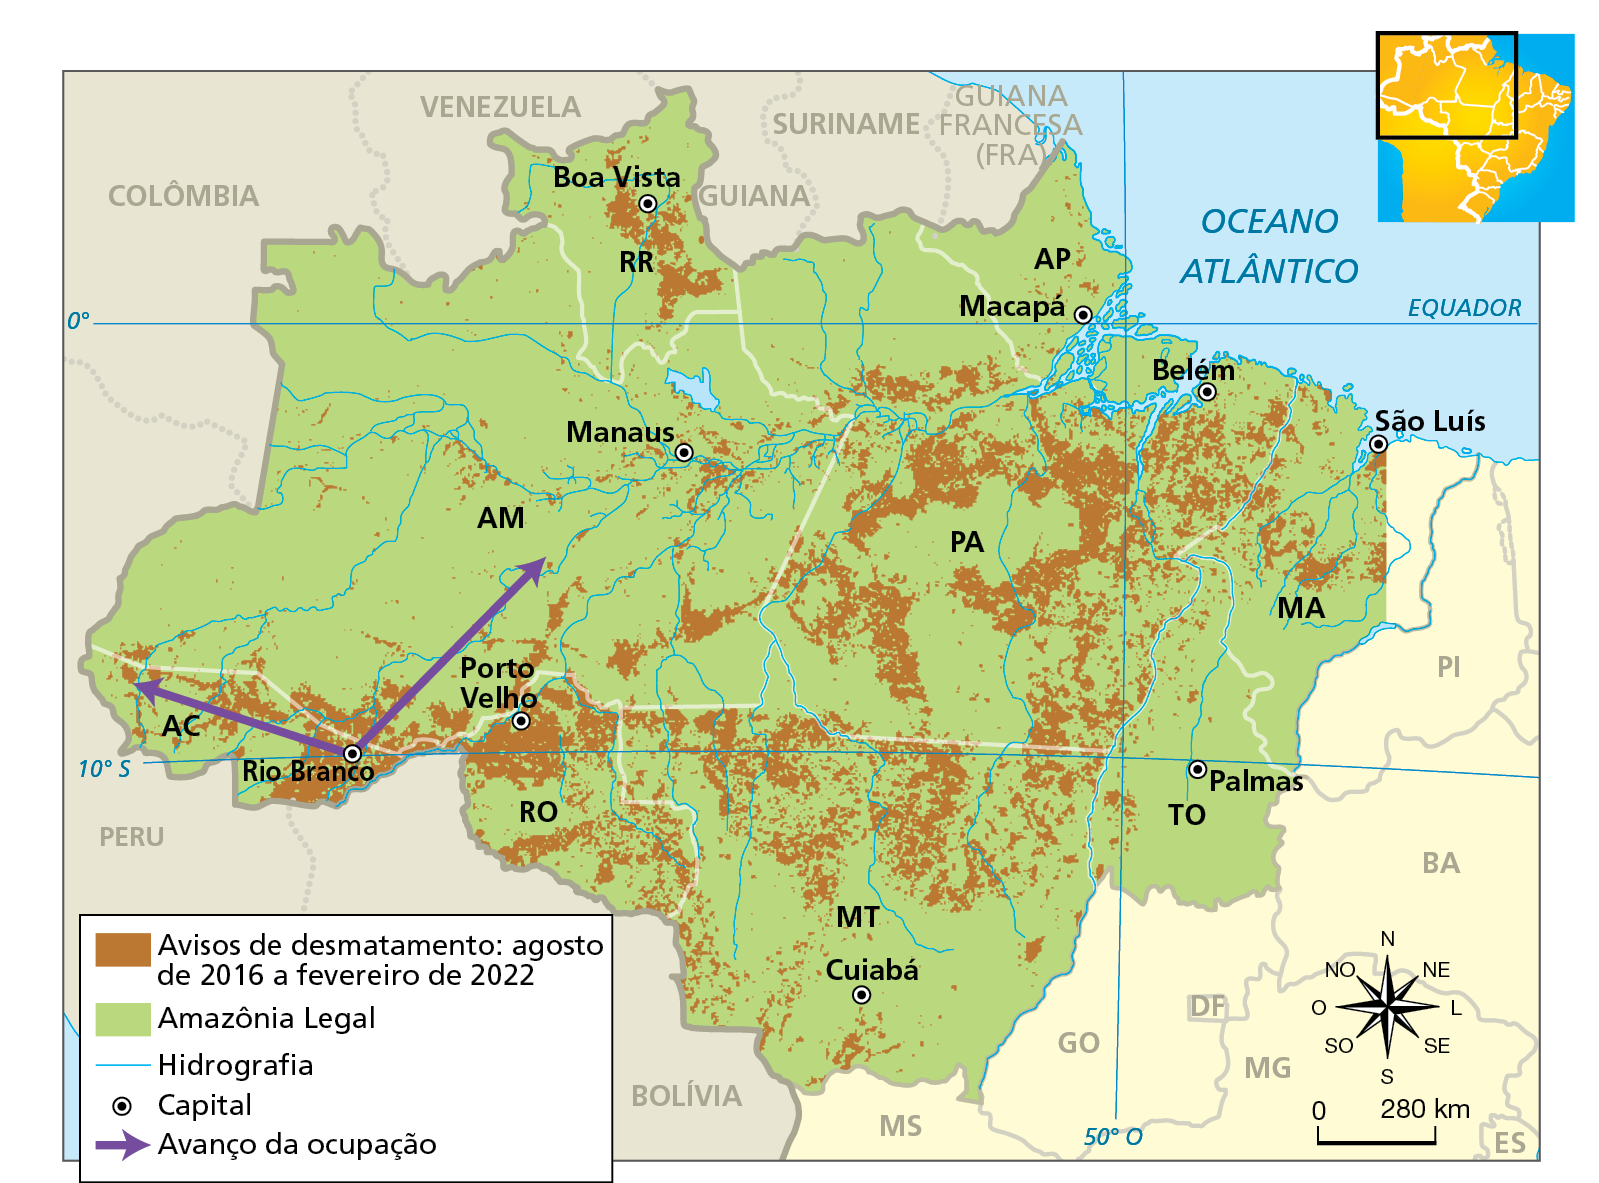 Mapa. Amazônia Legal: o arco do desmatamento – 2016 a 2022
Mapa com destaque para a Amazônia Legal, mostrando os avisos de desmatamento entre agosto de 2016 e fevereiro de 2022, a hidrografia e as capitais dos estados da região. Os avisos estão localizados em todos os estados da região norte, no centro-oeste do Maranhão e no Mato Grosso. As maiores concentrações de avisos estão no Pará e em uma área que abrange o sul do Amazonas, o leste do Acre e o noroeste de Rondônia, além de diversas manchas do norte mato-grossense e de Roraima. Duas setas indicam o avanço da ocupação na região. Elas saem de Rio Branco, capital do Acre, e se direcionam para o oeste do estado e o nordeste, sobre território amazonense.
Na parte inferior, rosa dos ventos e escala de 0 a 280 quilômetros.